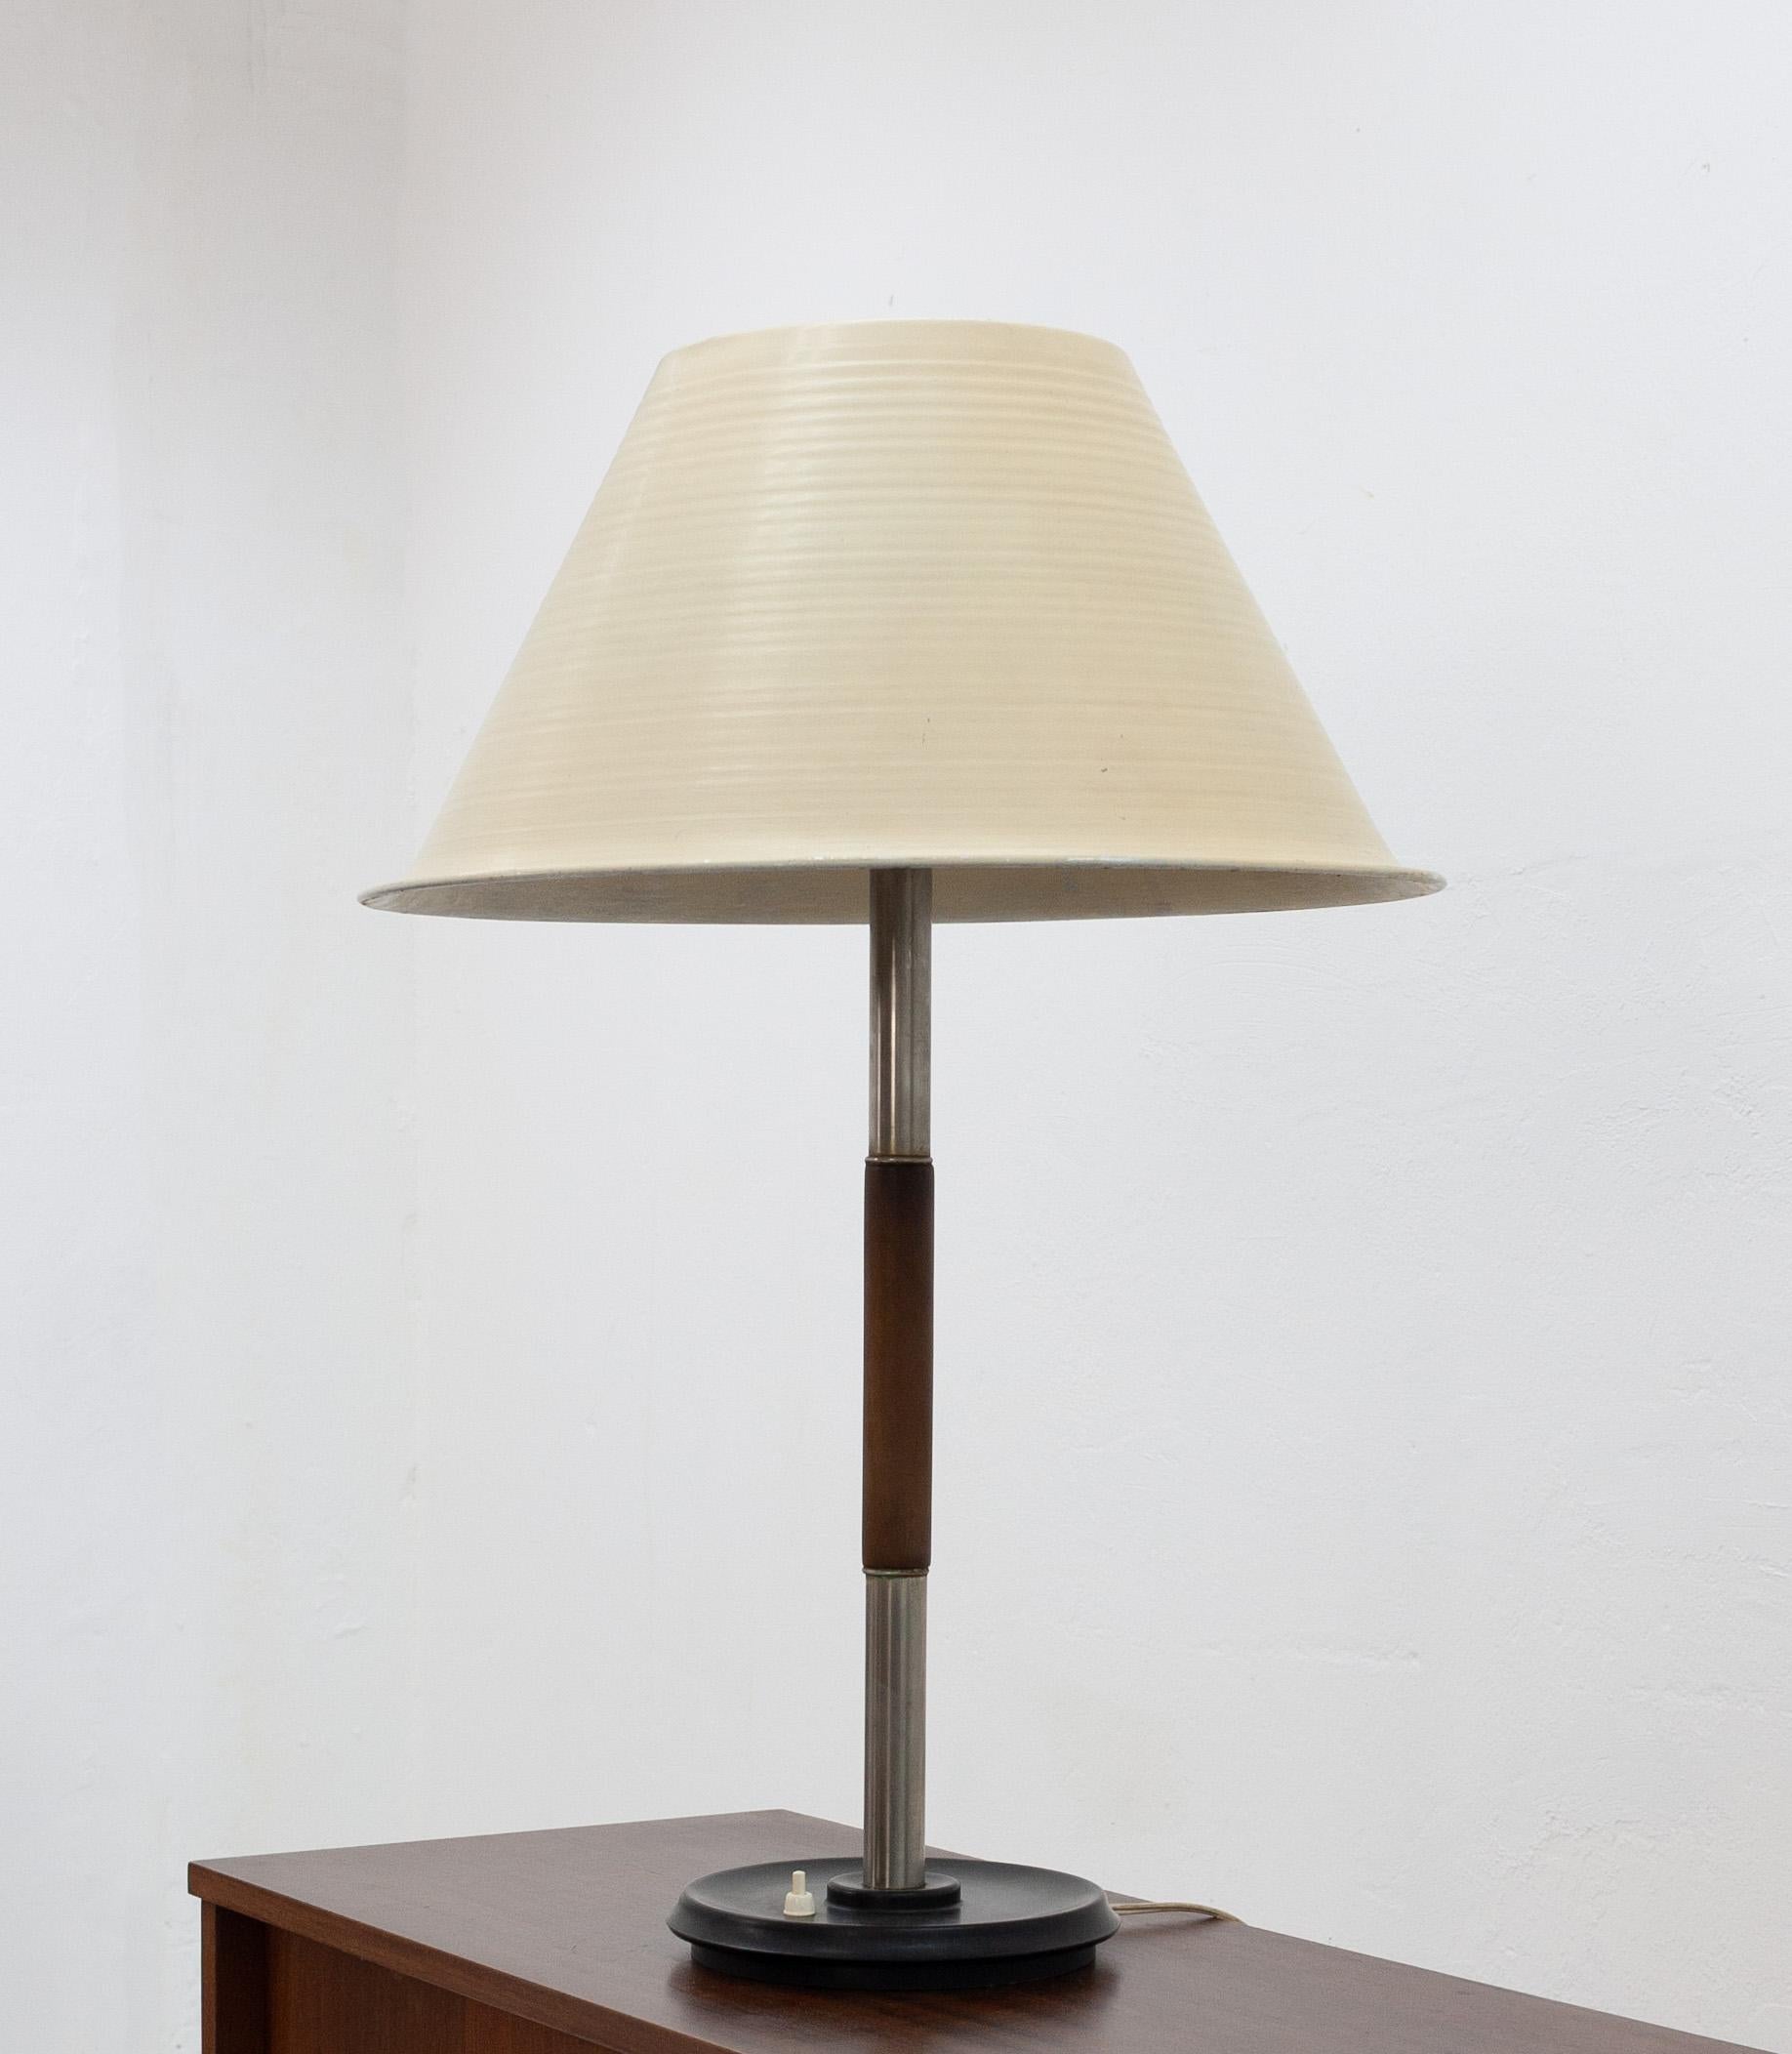 Très rare, cette lampe de table de W.H. Gispen. Modèle Giso 5020, 1947. Comprend une base ronde en bakélite avec interrupteur à poussoir, un abat-jour en aluminium strié et le capuchon intérieur en verre d'origine. Signé sur la base. Tout est